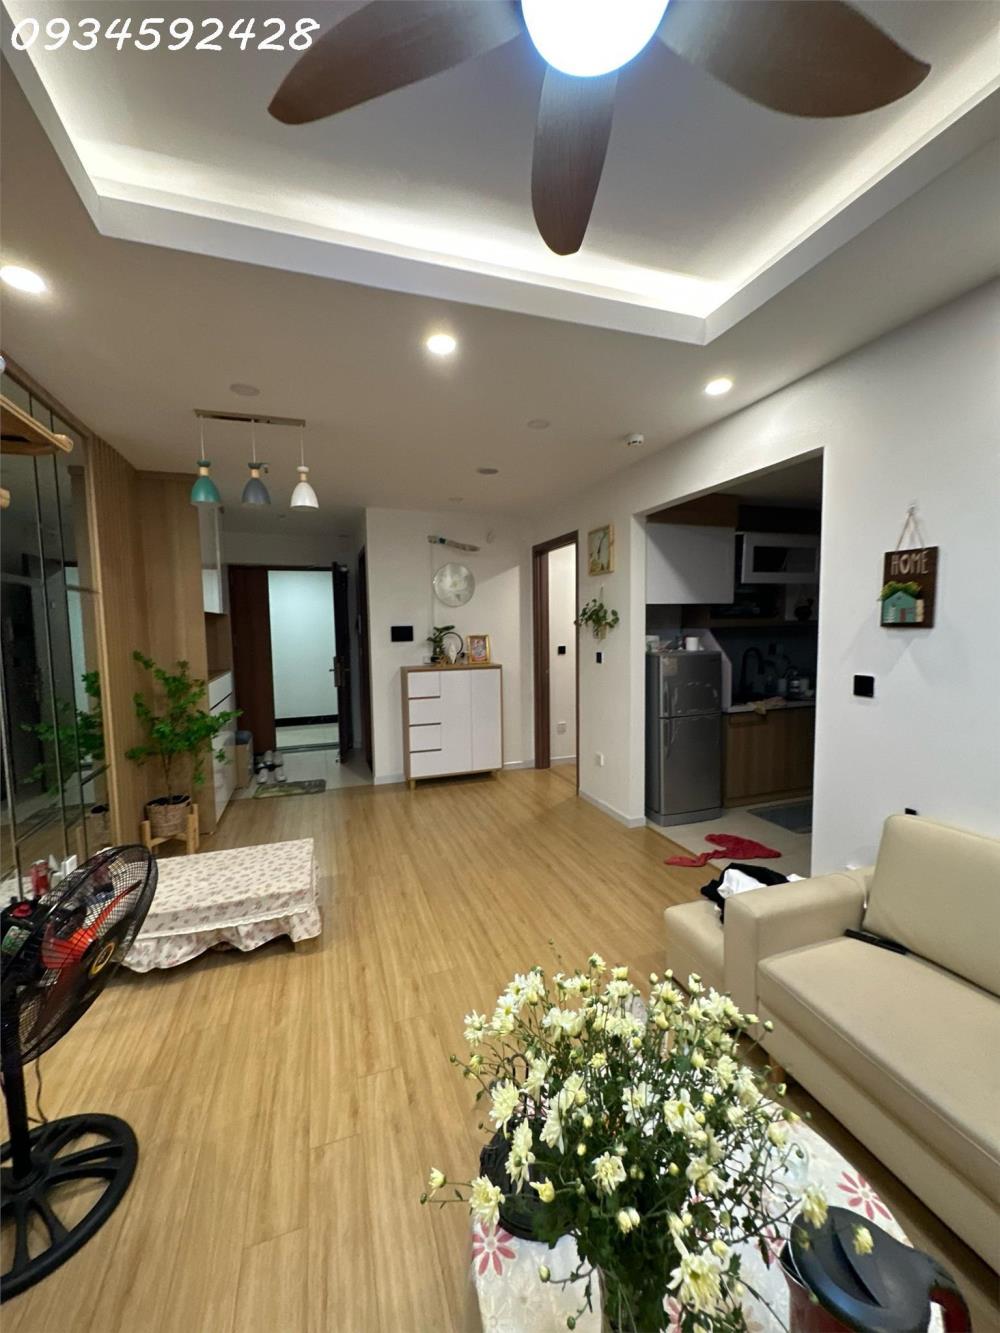 Thuê căn hộ chung cư cao cấp Bắc Giang, giá từ 4 triệu1361232